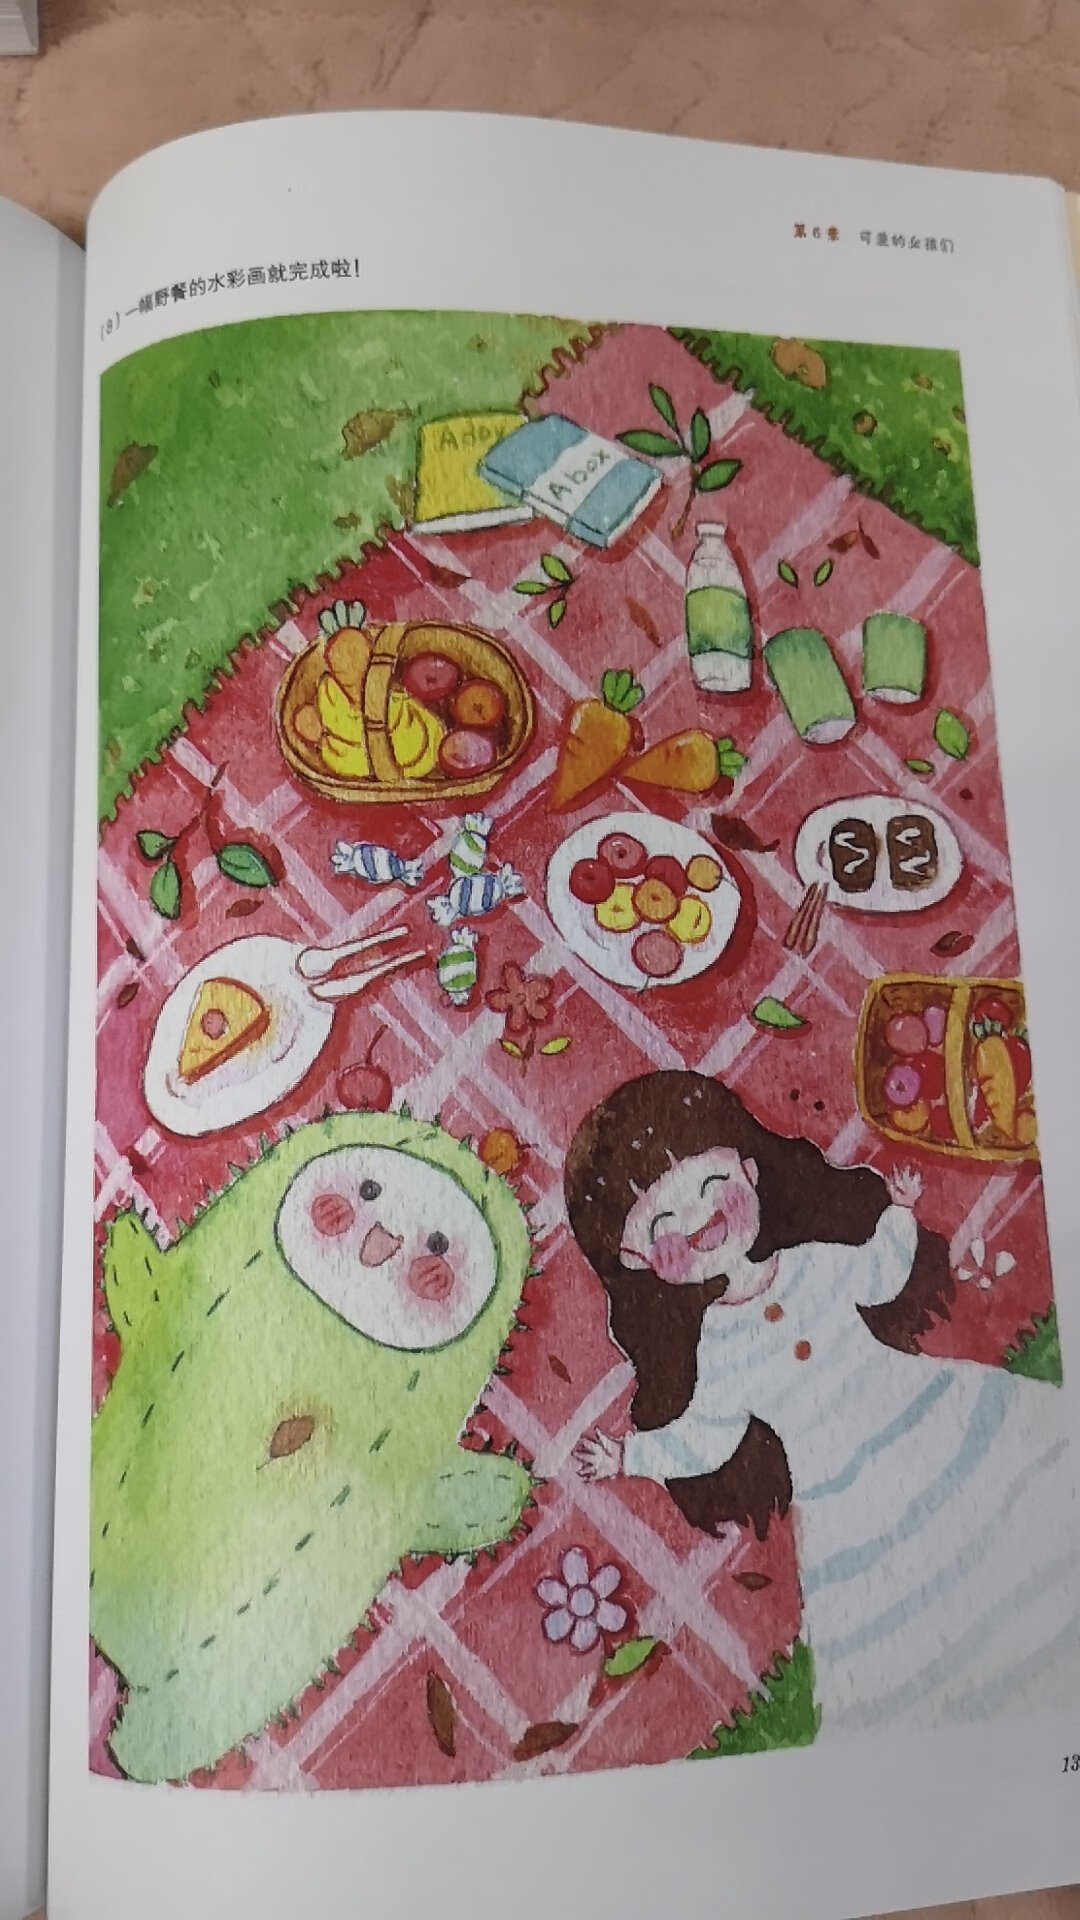 孩子很喜欢画画，买了很多画画方面的画册，夏七酱的这本水彩画很可爱。